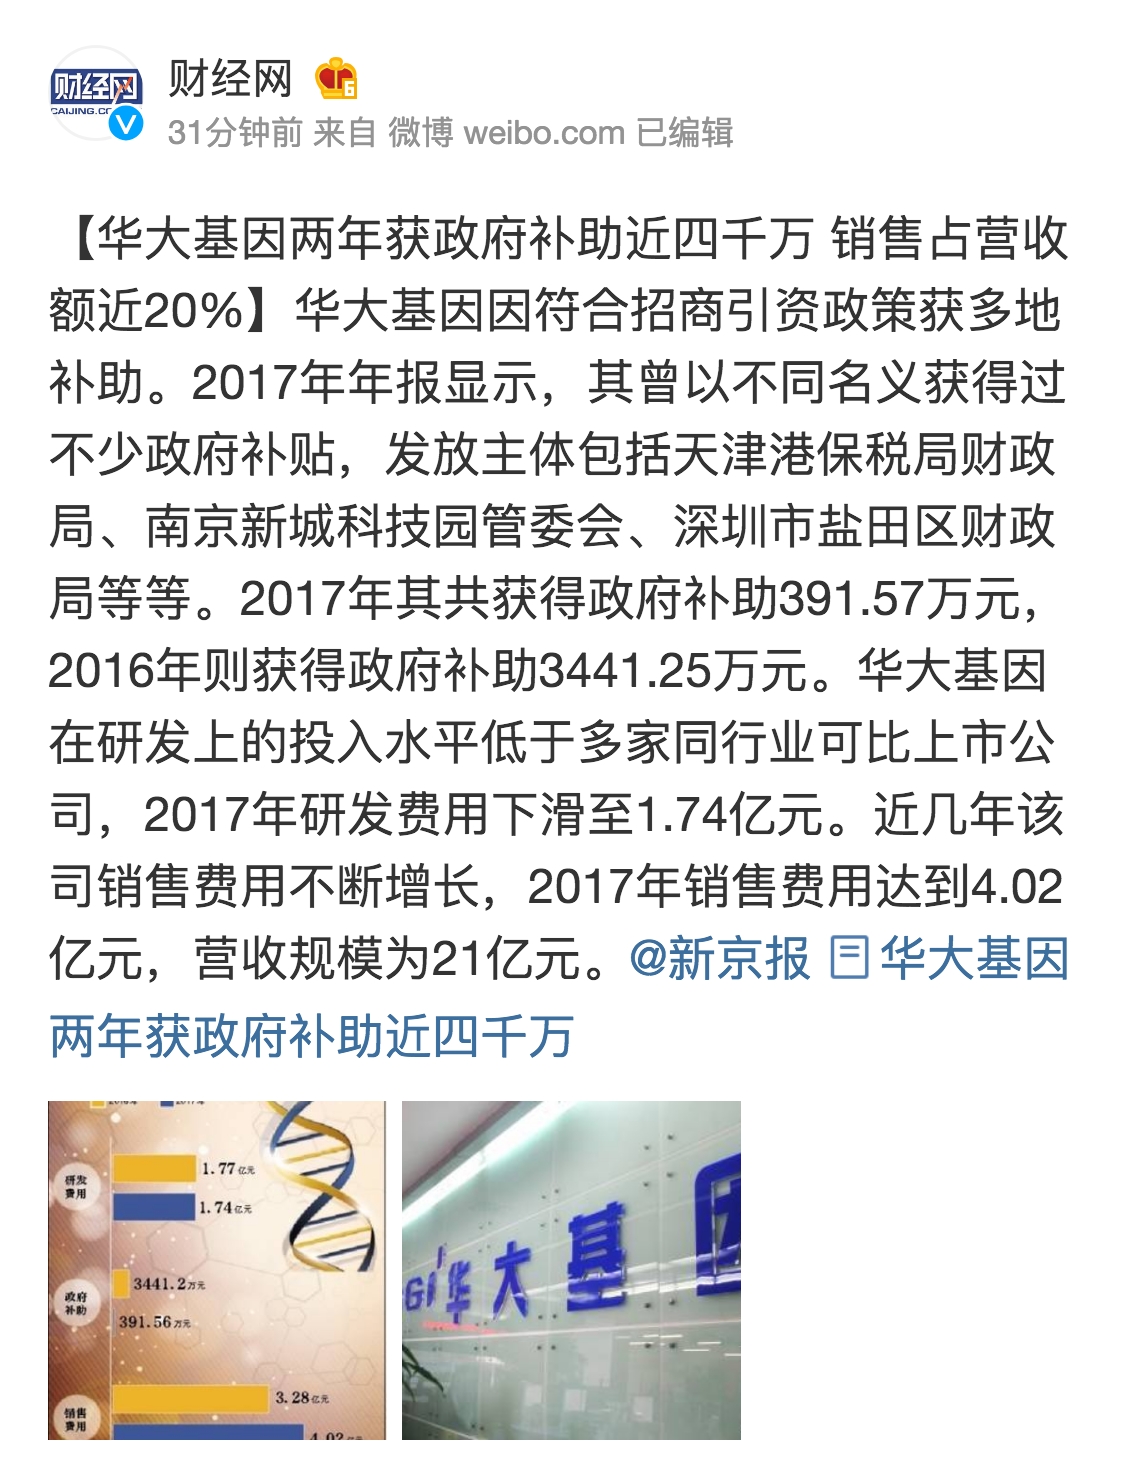 财经网发布最新微博【华大基因两年获政府补助